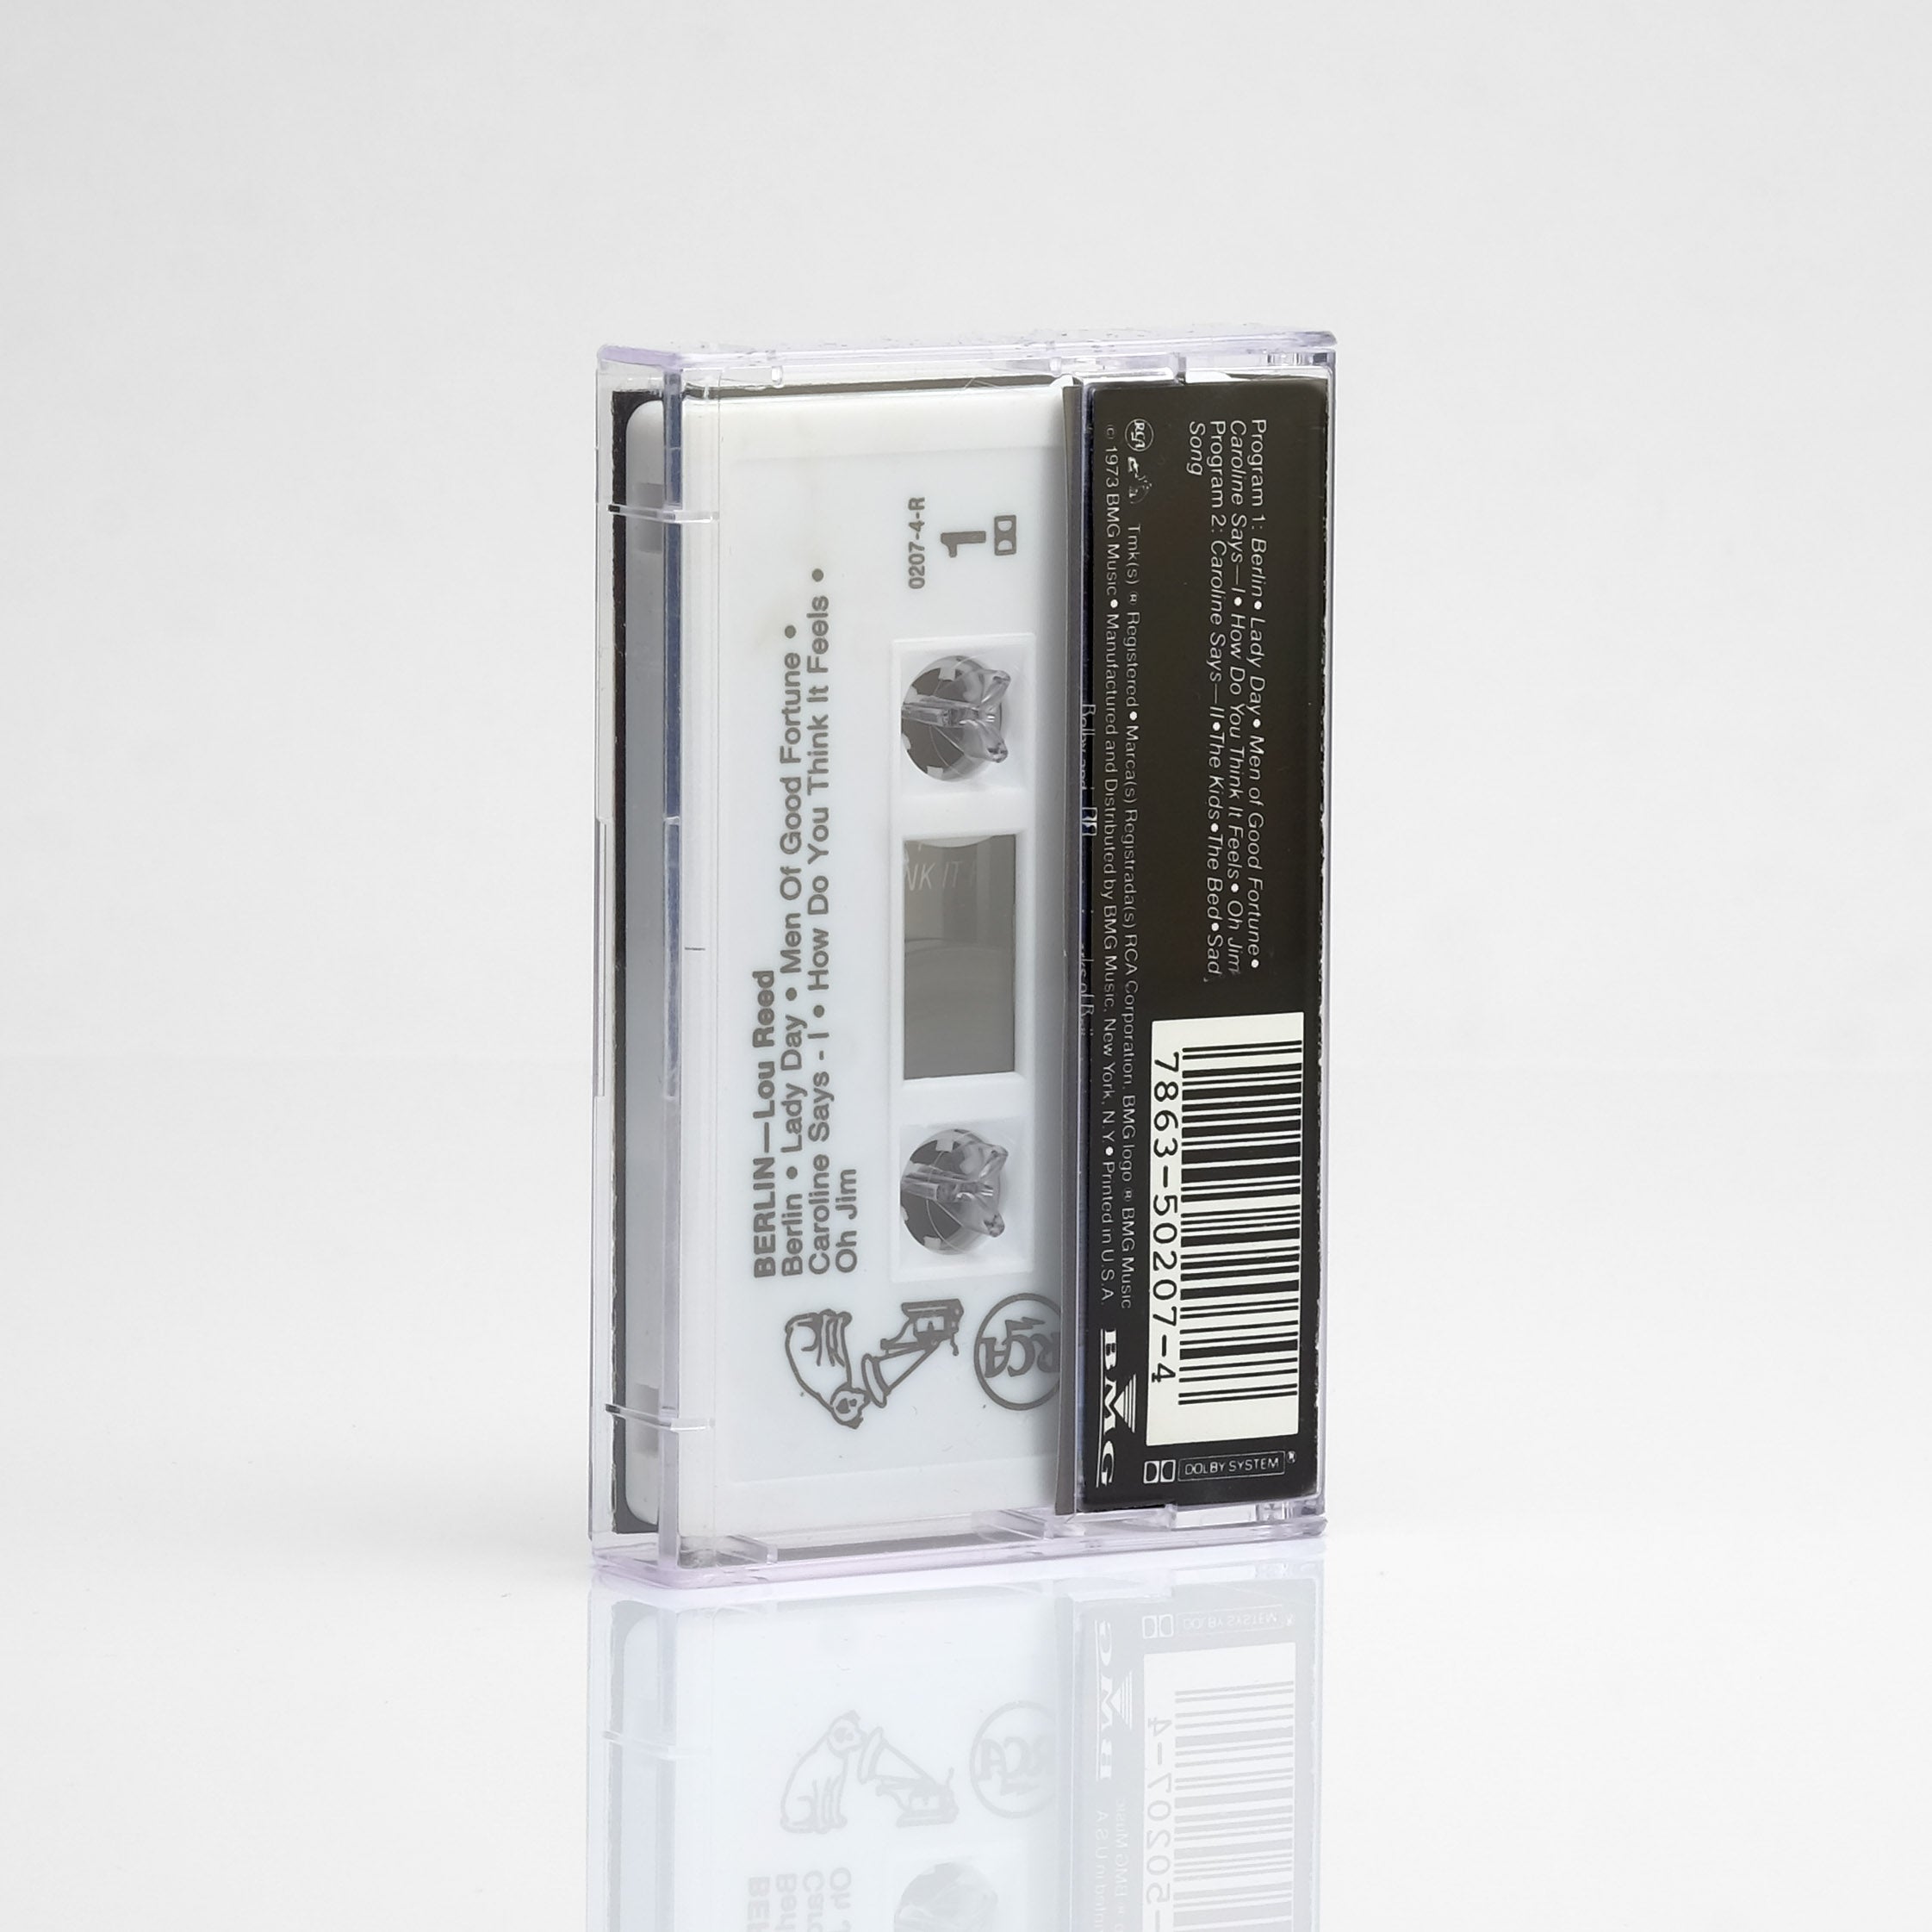 Lou Reed - Berlin Cassette Tape